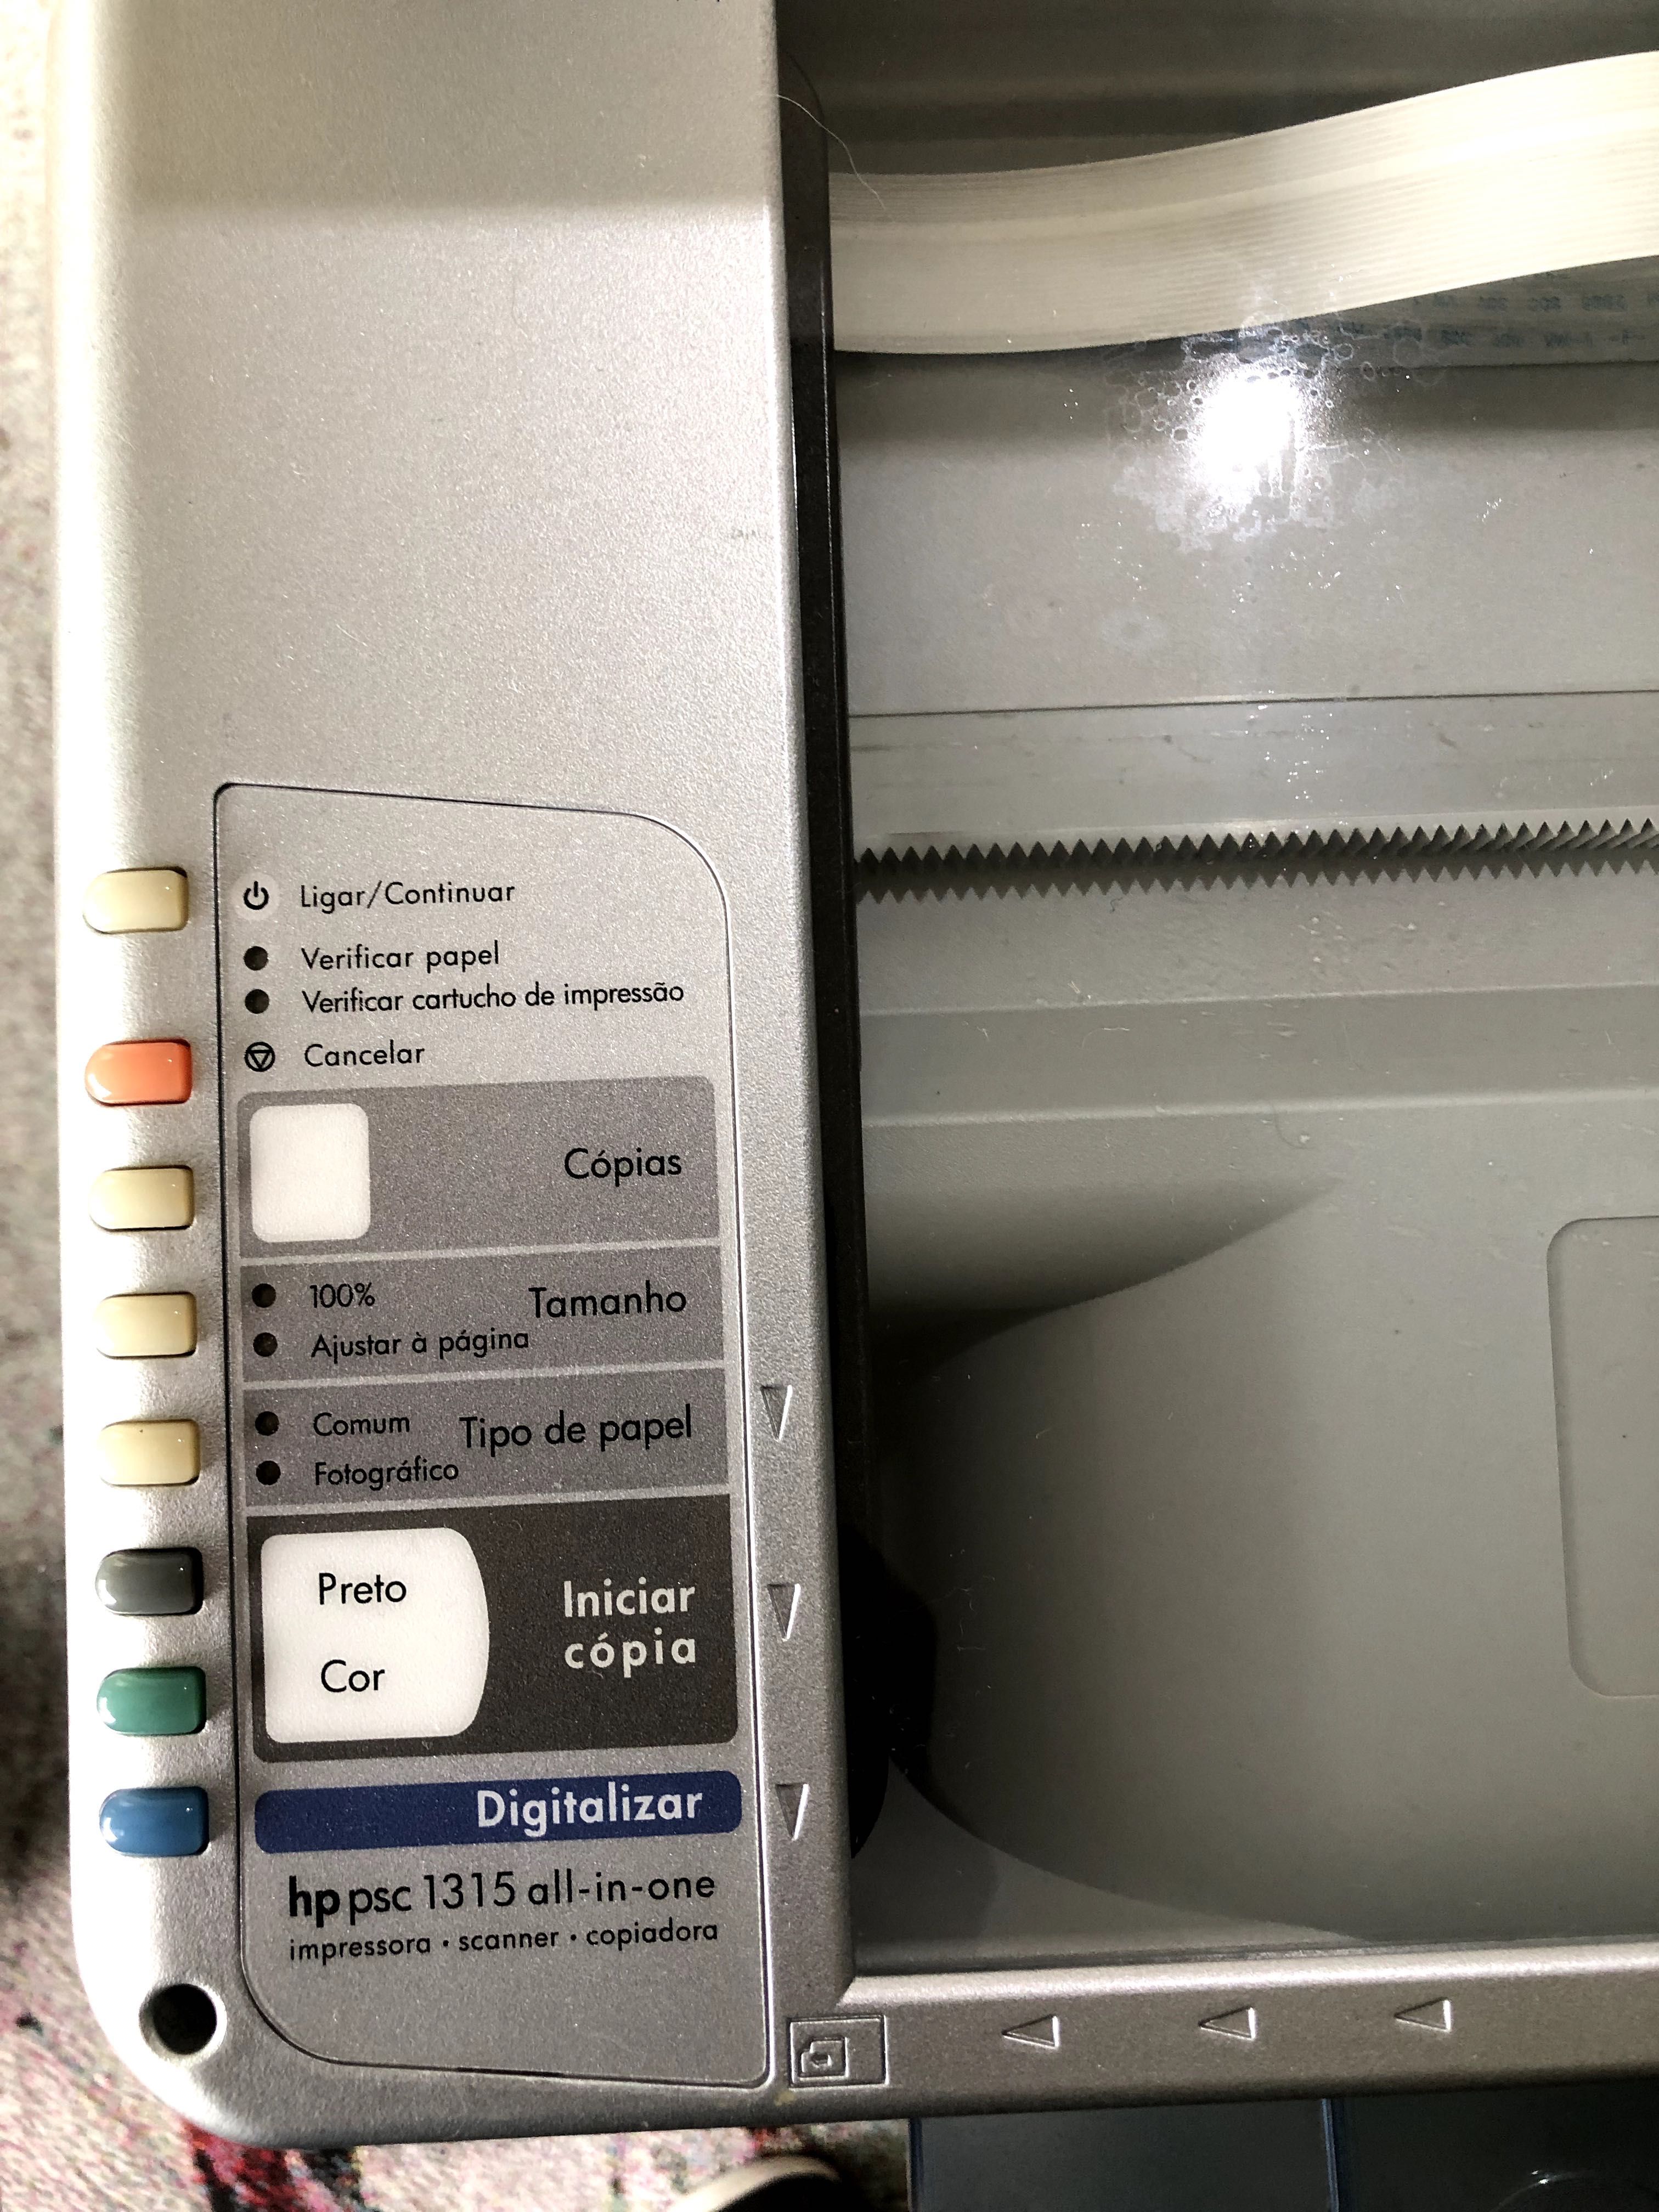 Impressora HP Impressora, scanner,modelo psc1314 all-in-one,bom estado